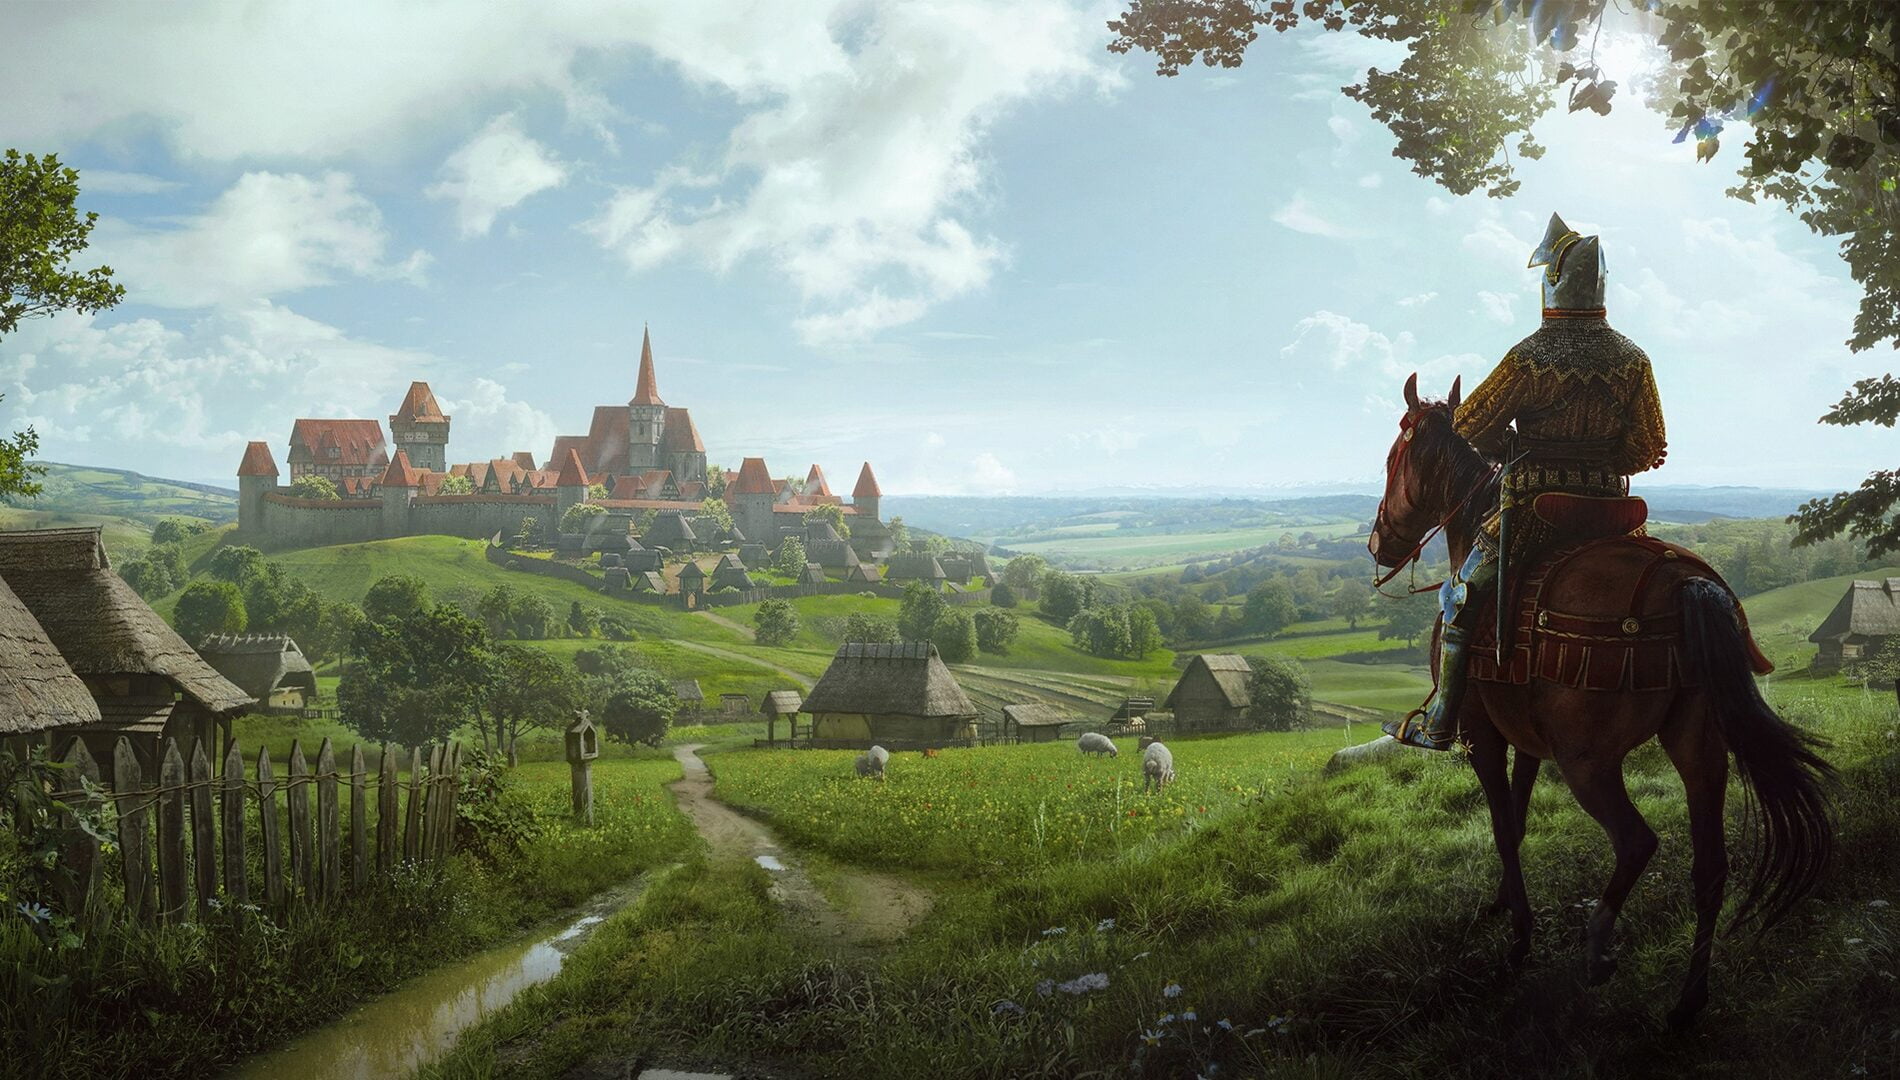 Rycerz na koniu obserwuje średniowieczne miasto na wzgórzu otoczone murami, wśród zielonych krajobrazów i wiejskich chat.